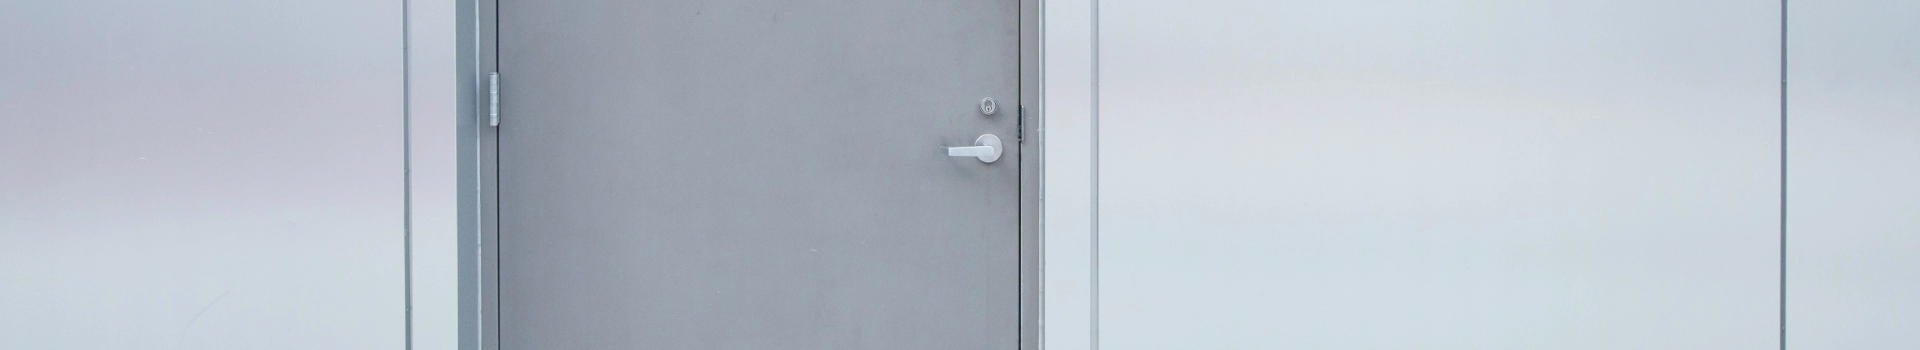 srebrna klamka w drzwiach